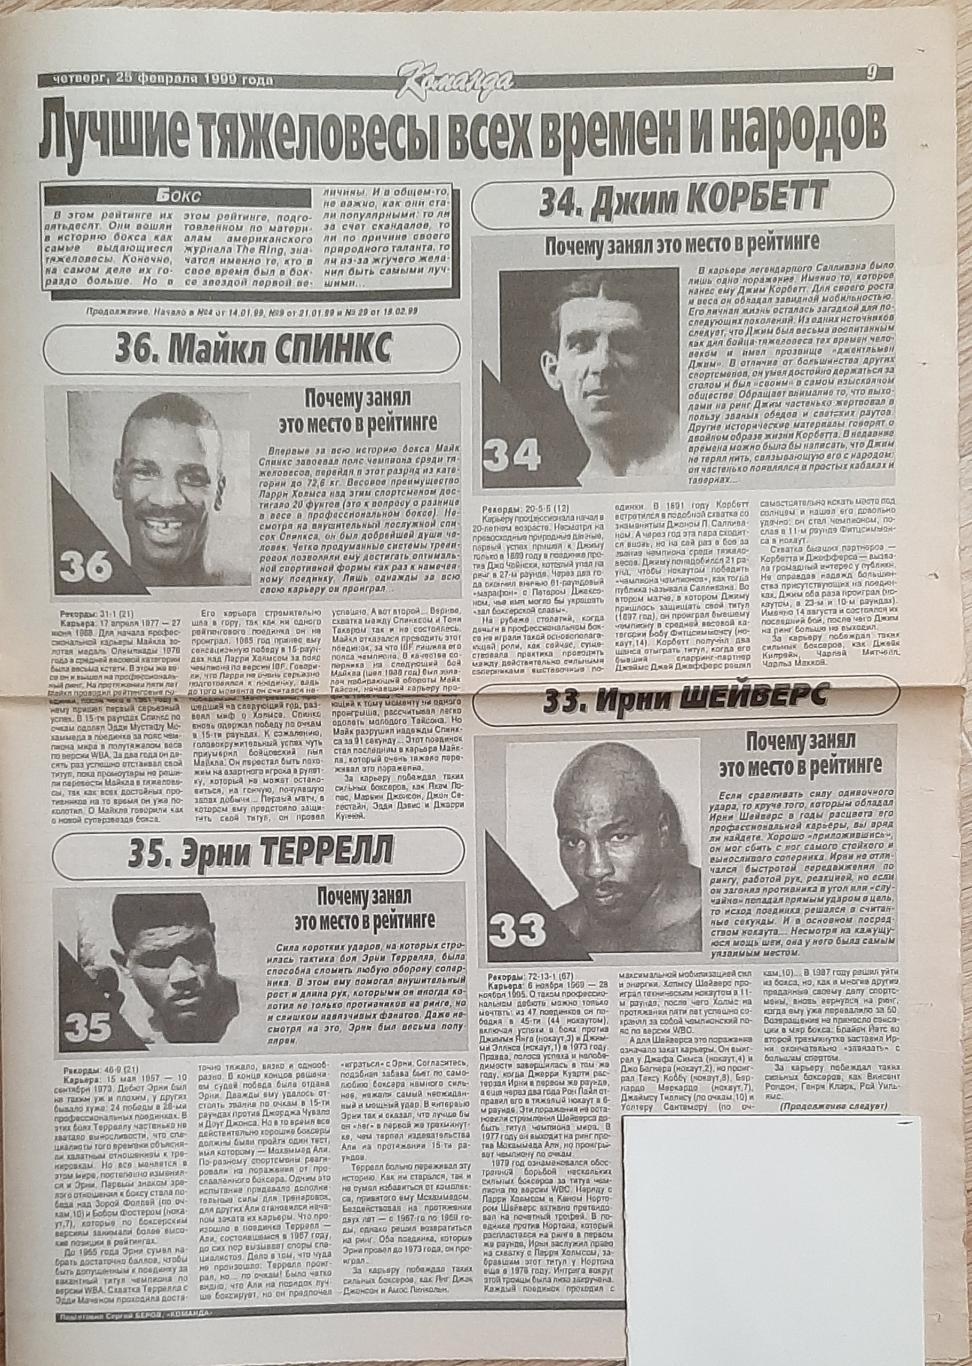 Вирізка з газети Команда (25.02.1999) Бокс Кращі всіх часів та народів